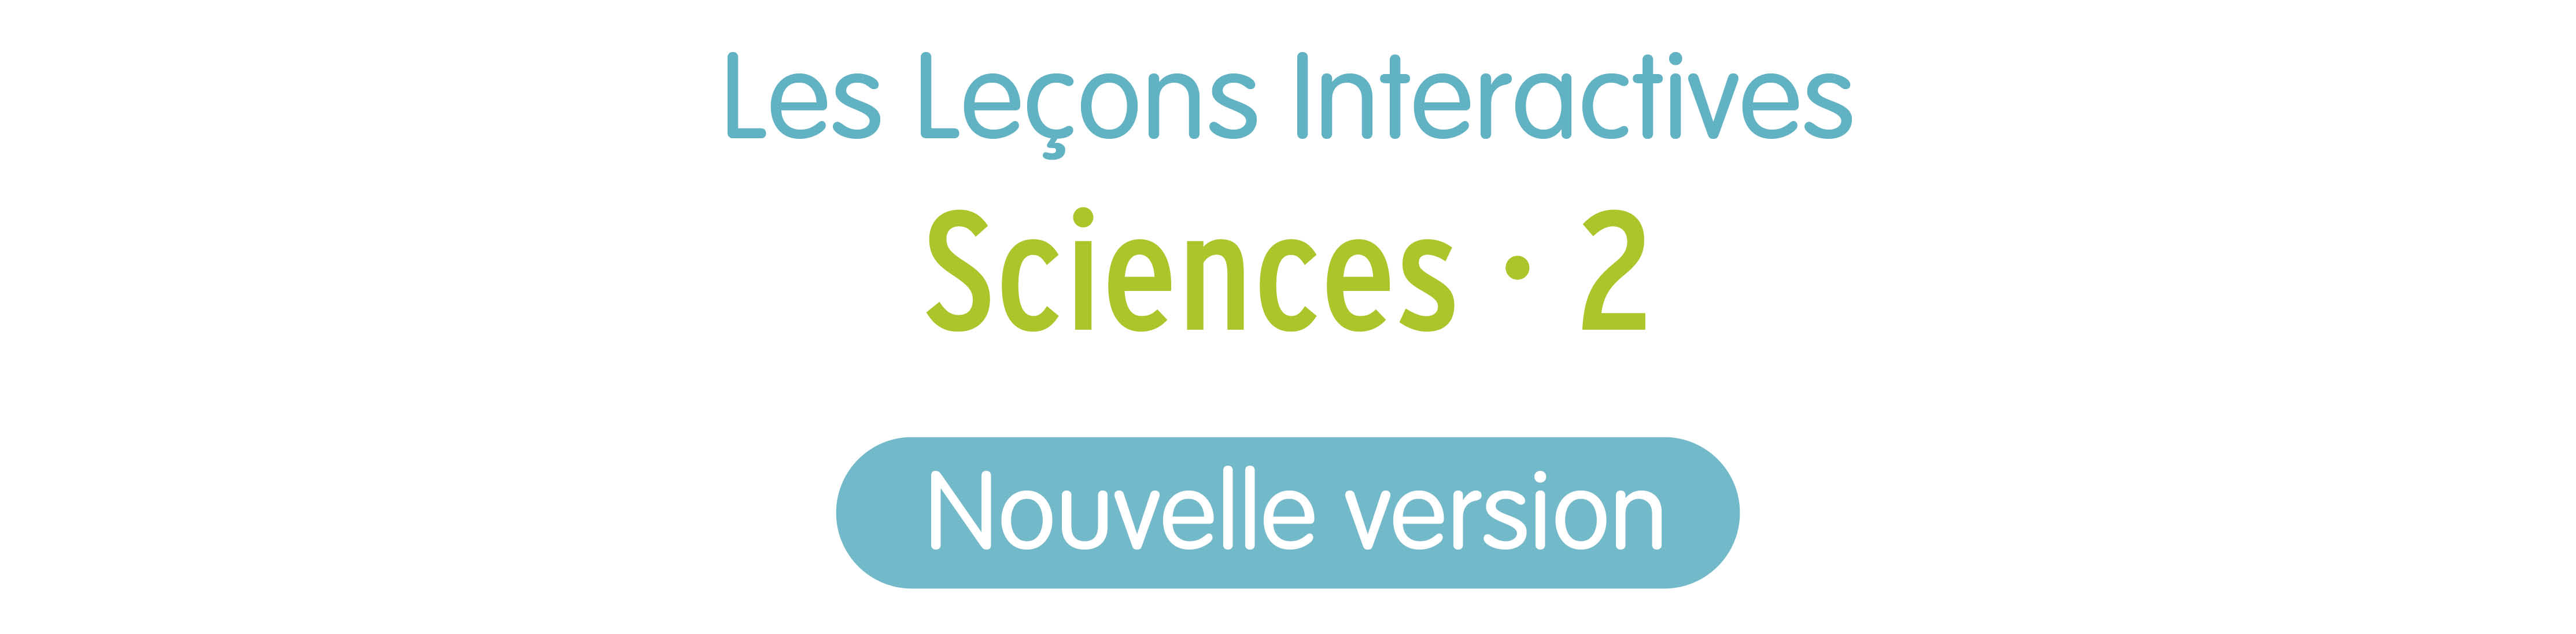 LI sciences 2 nouvelle edition